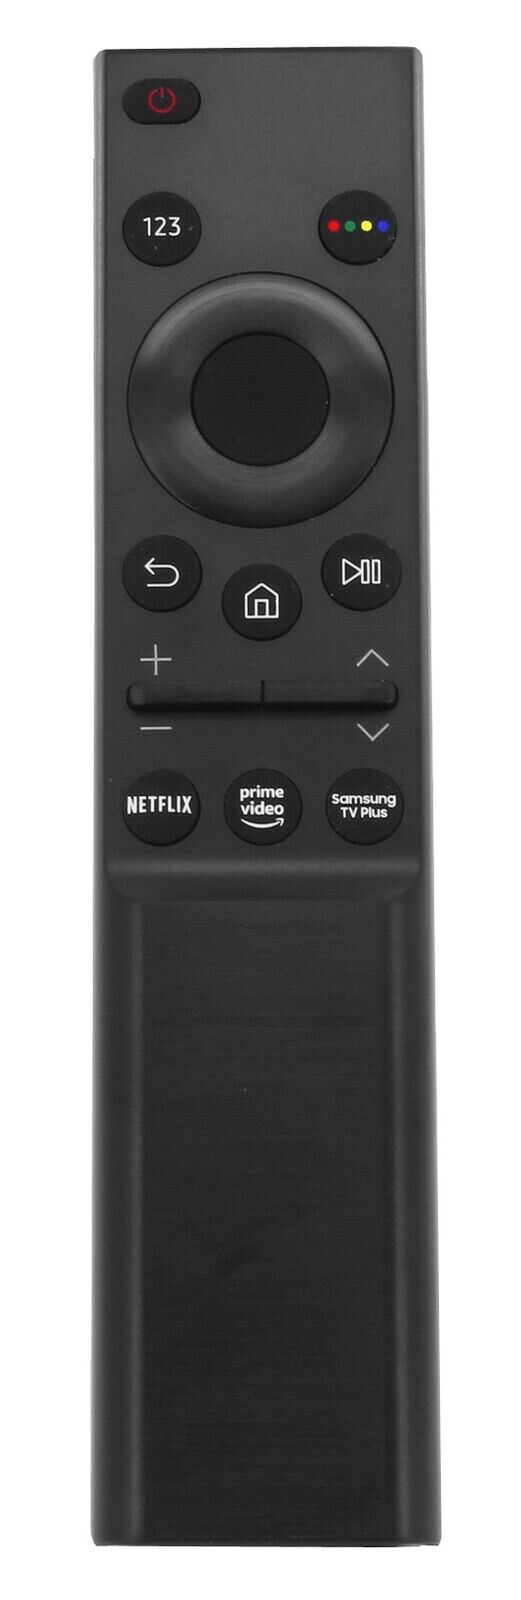 Ersatz Fernbedienung für Alle Samsung Fernseher mit Netflix Prime Samsung Taste